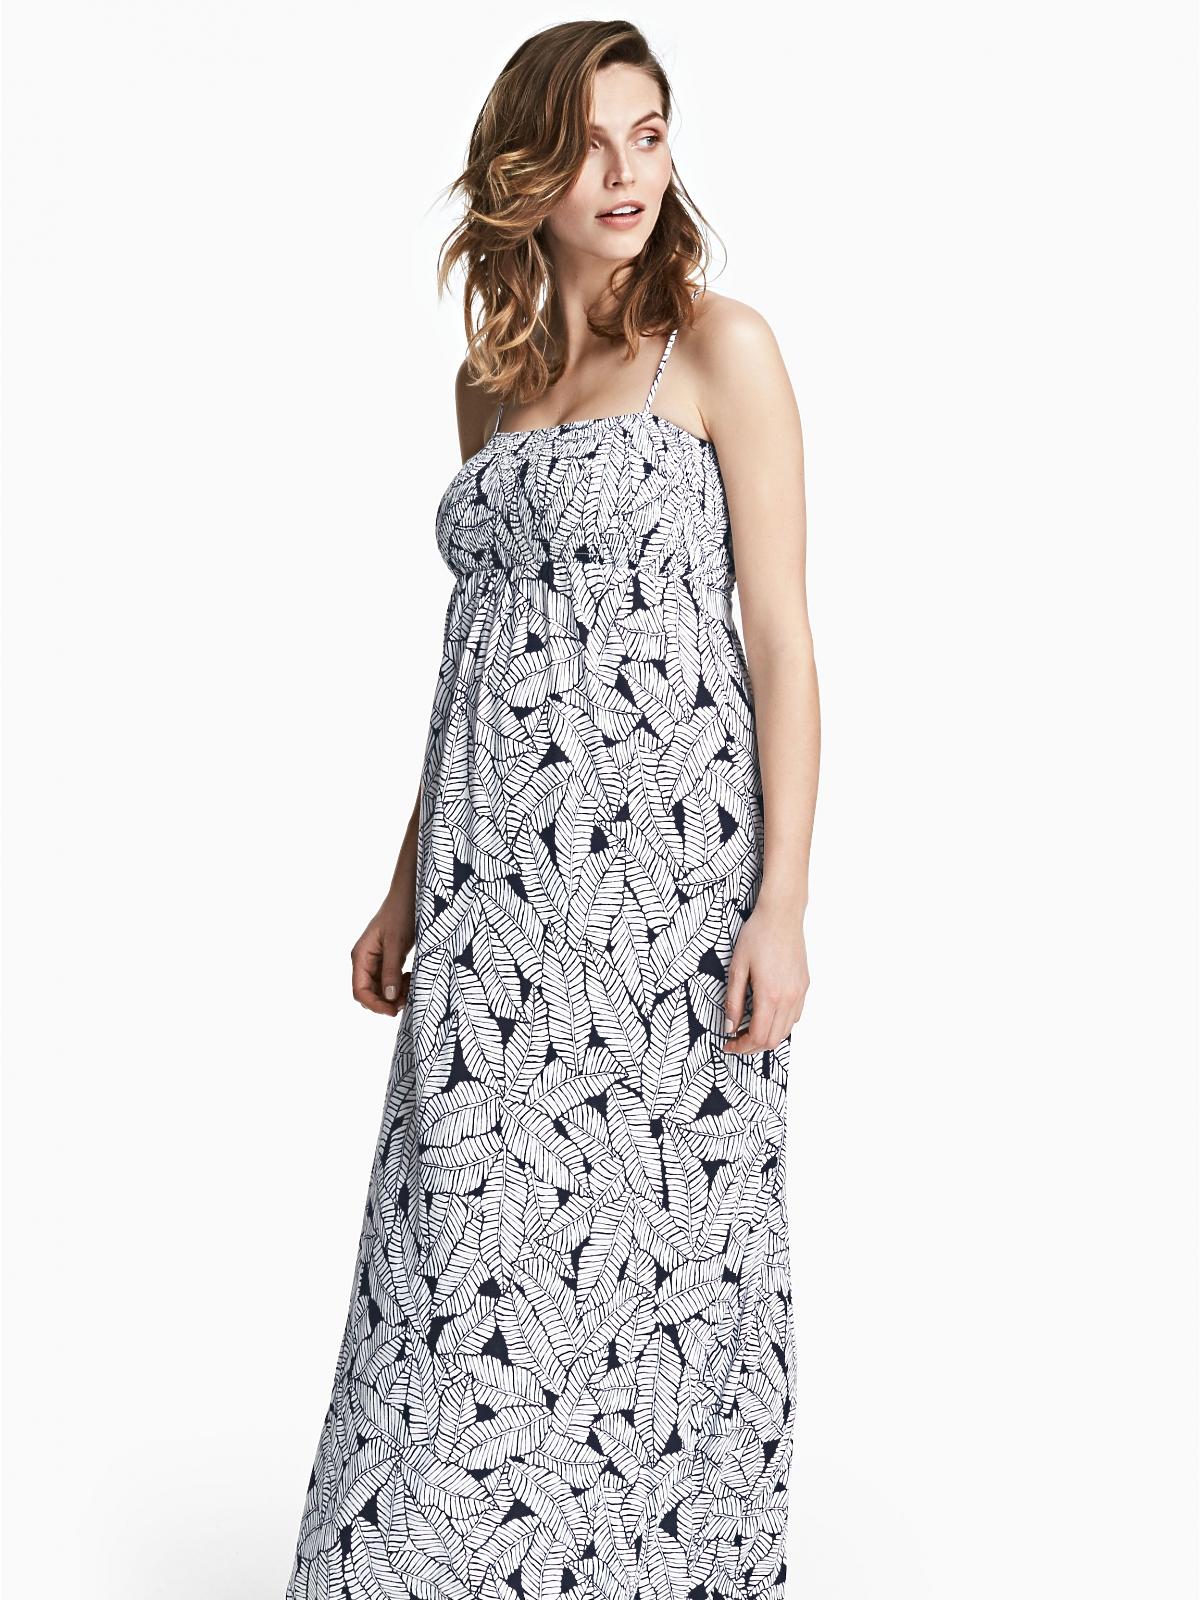 letnia sukienka H&M dla ciężarnych w kwiatowy wzorek.jpg